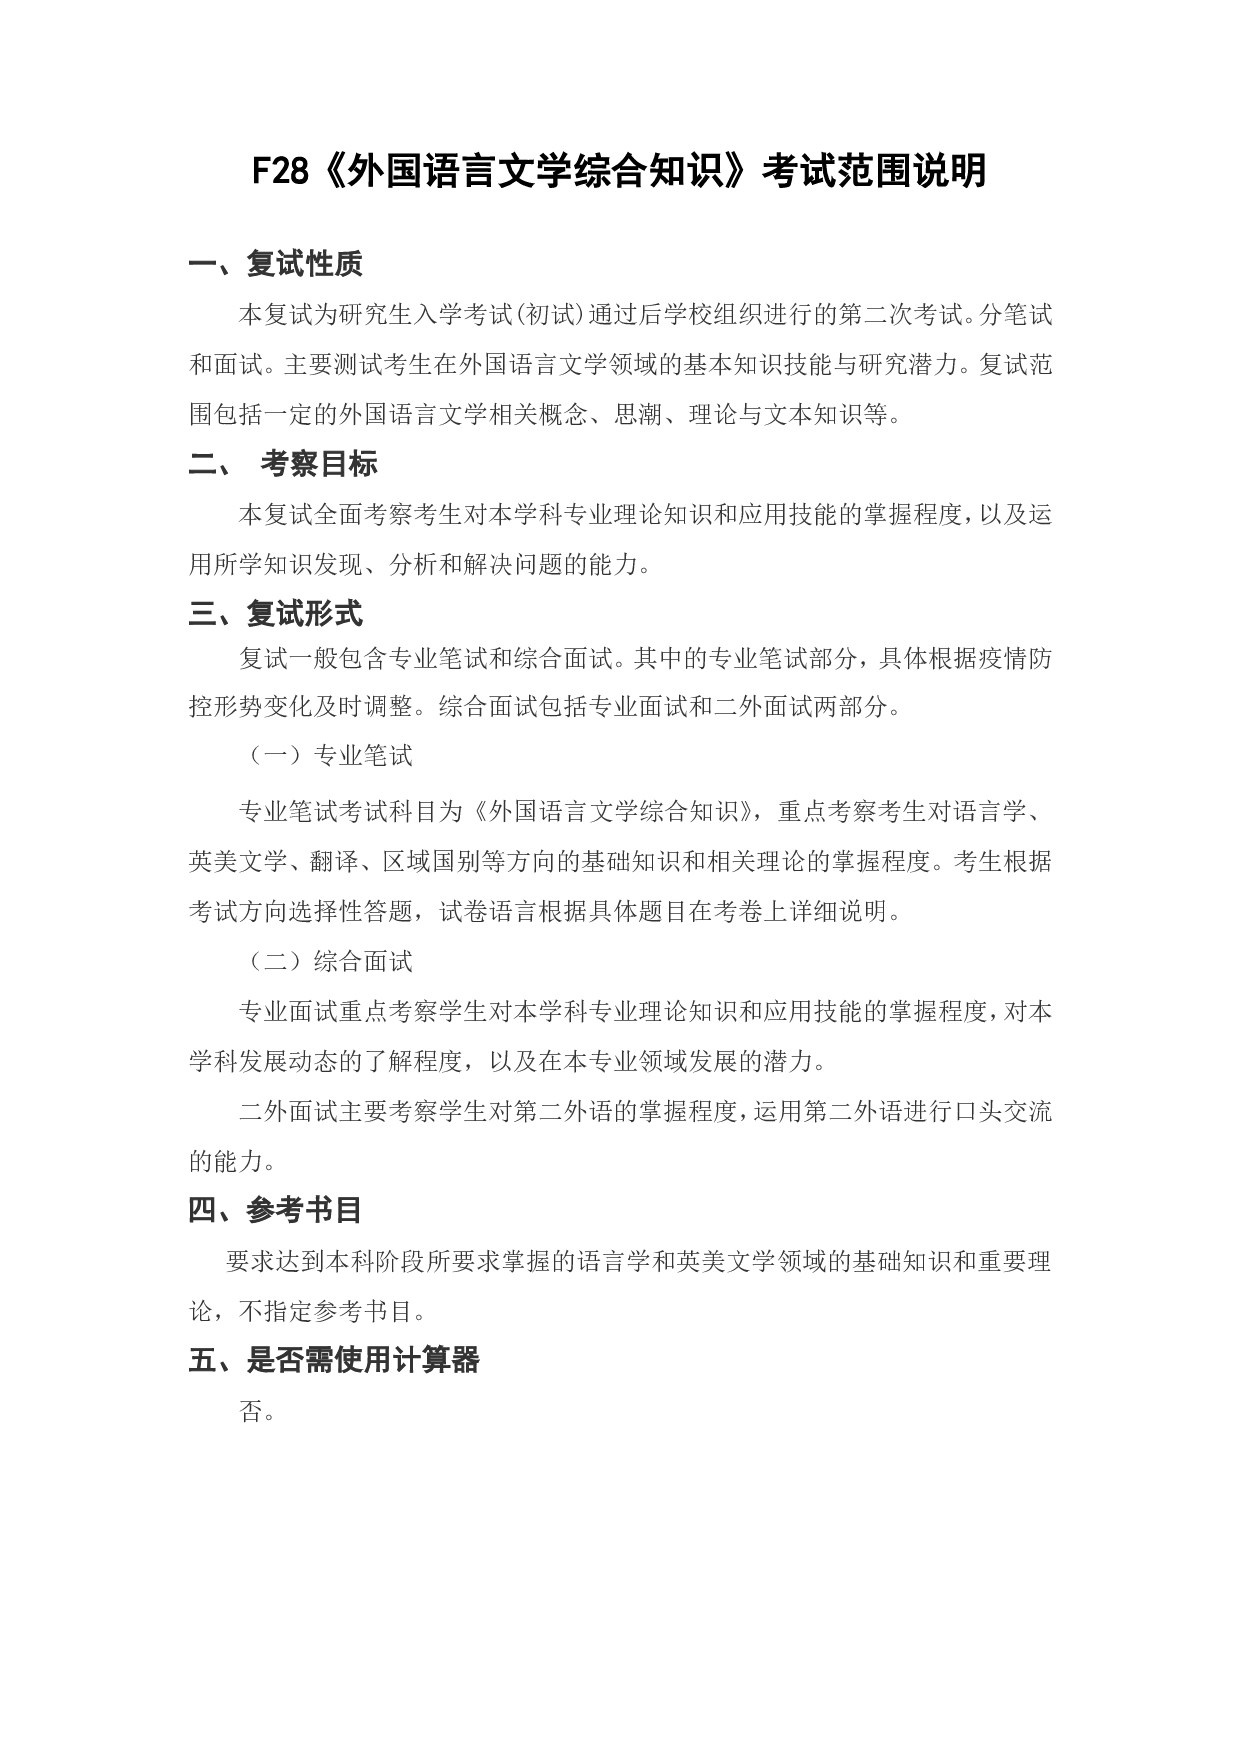 上海海洋大学2023年考研自命题科目 F28《外国语言文学综合知识》 考试范围第1页